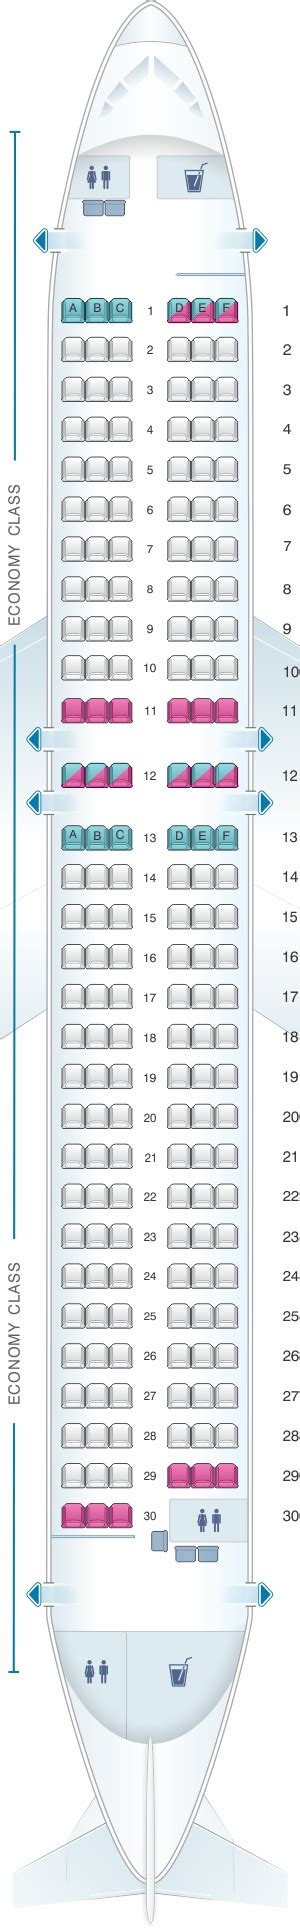 Plan De Cabine Qantaslink Airbus A320 200 Seatmaestrofr